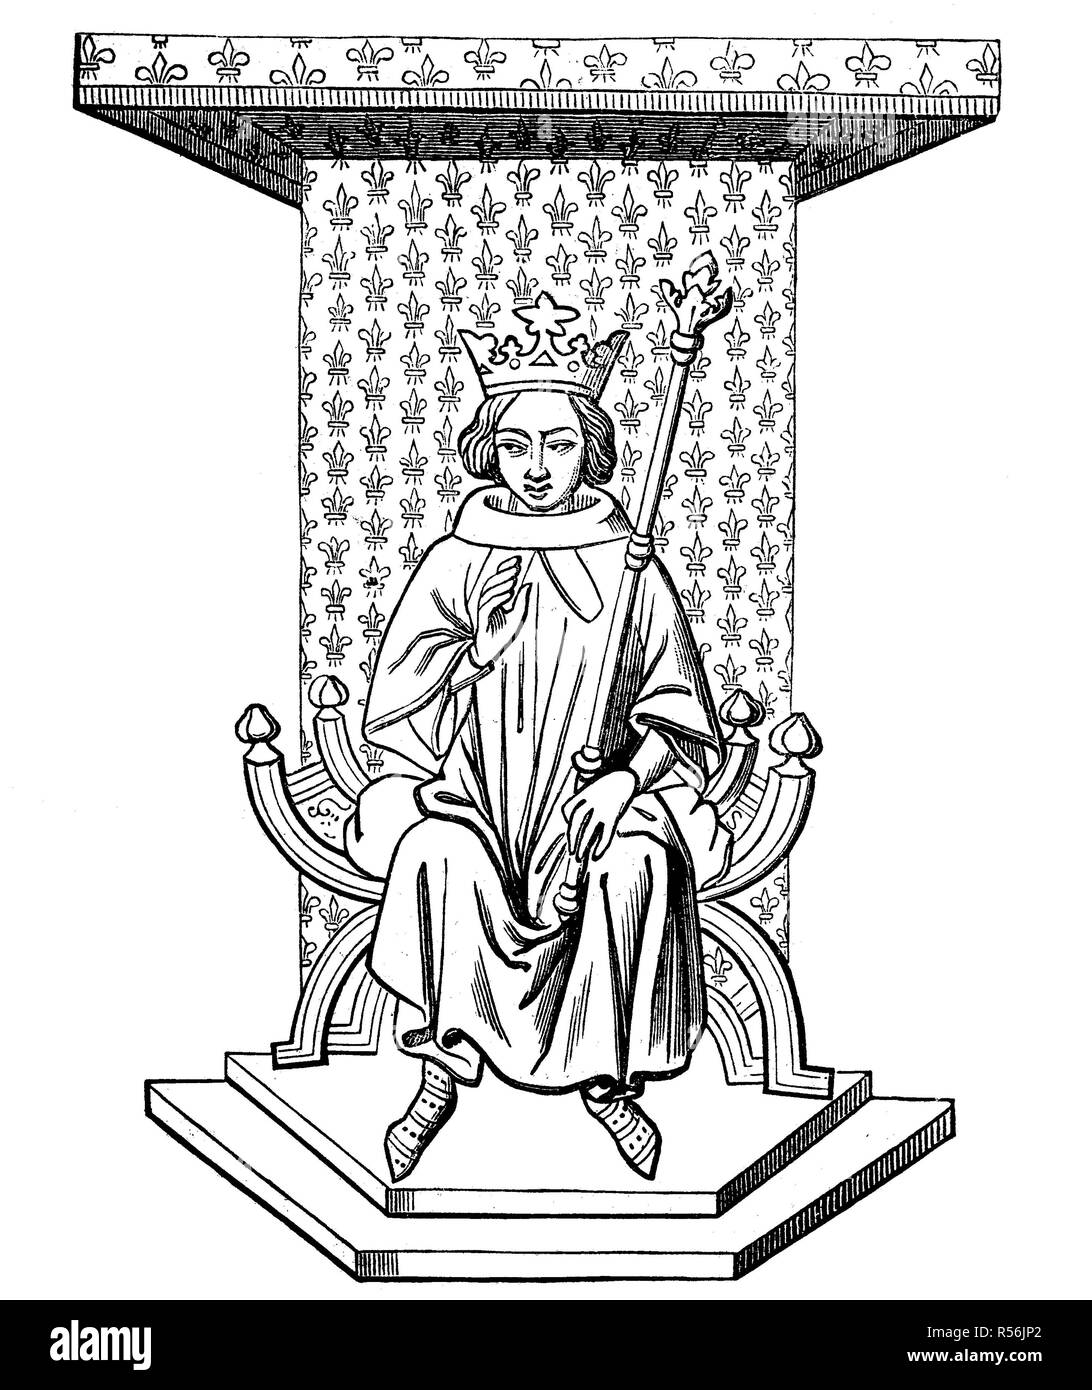 Il re Luigi IX di Francia sul trono, dopo una miniatura del XIV secolo dalla Biblioteca Nazionale di Parigi, xilografia Foto Stock